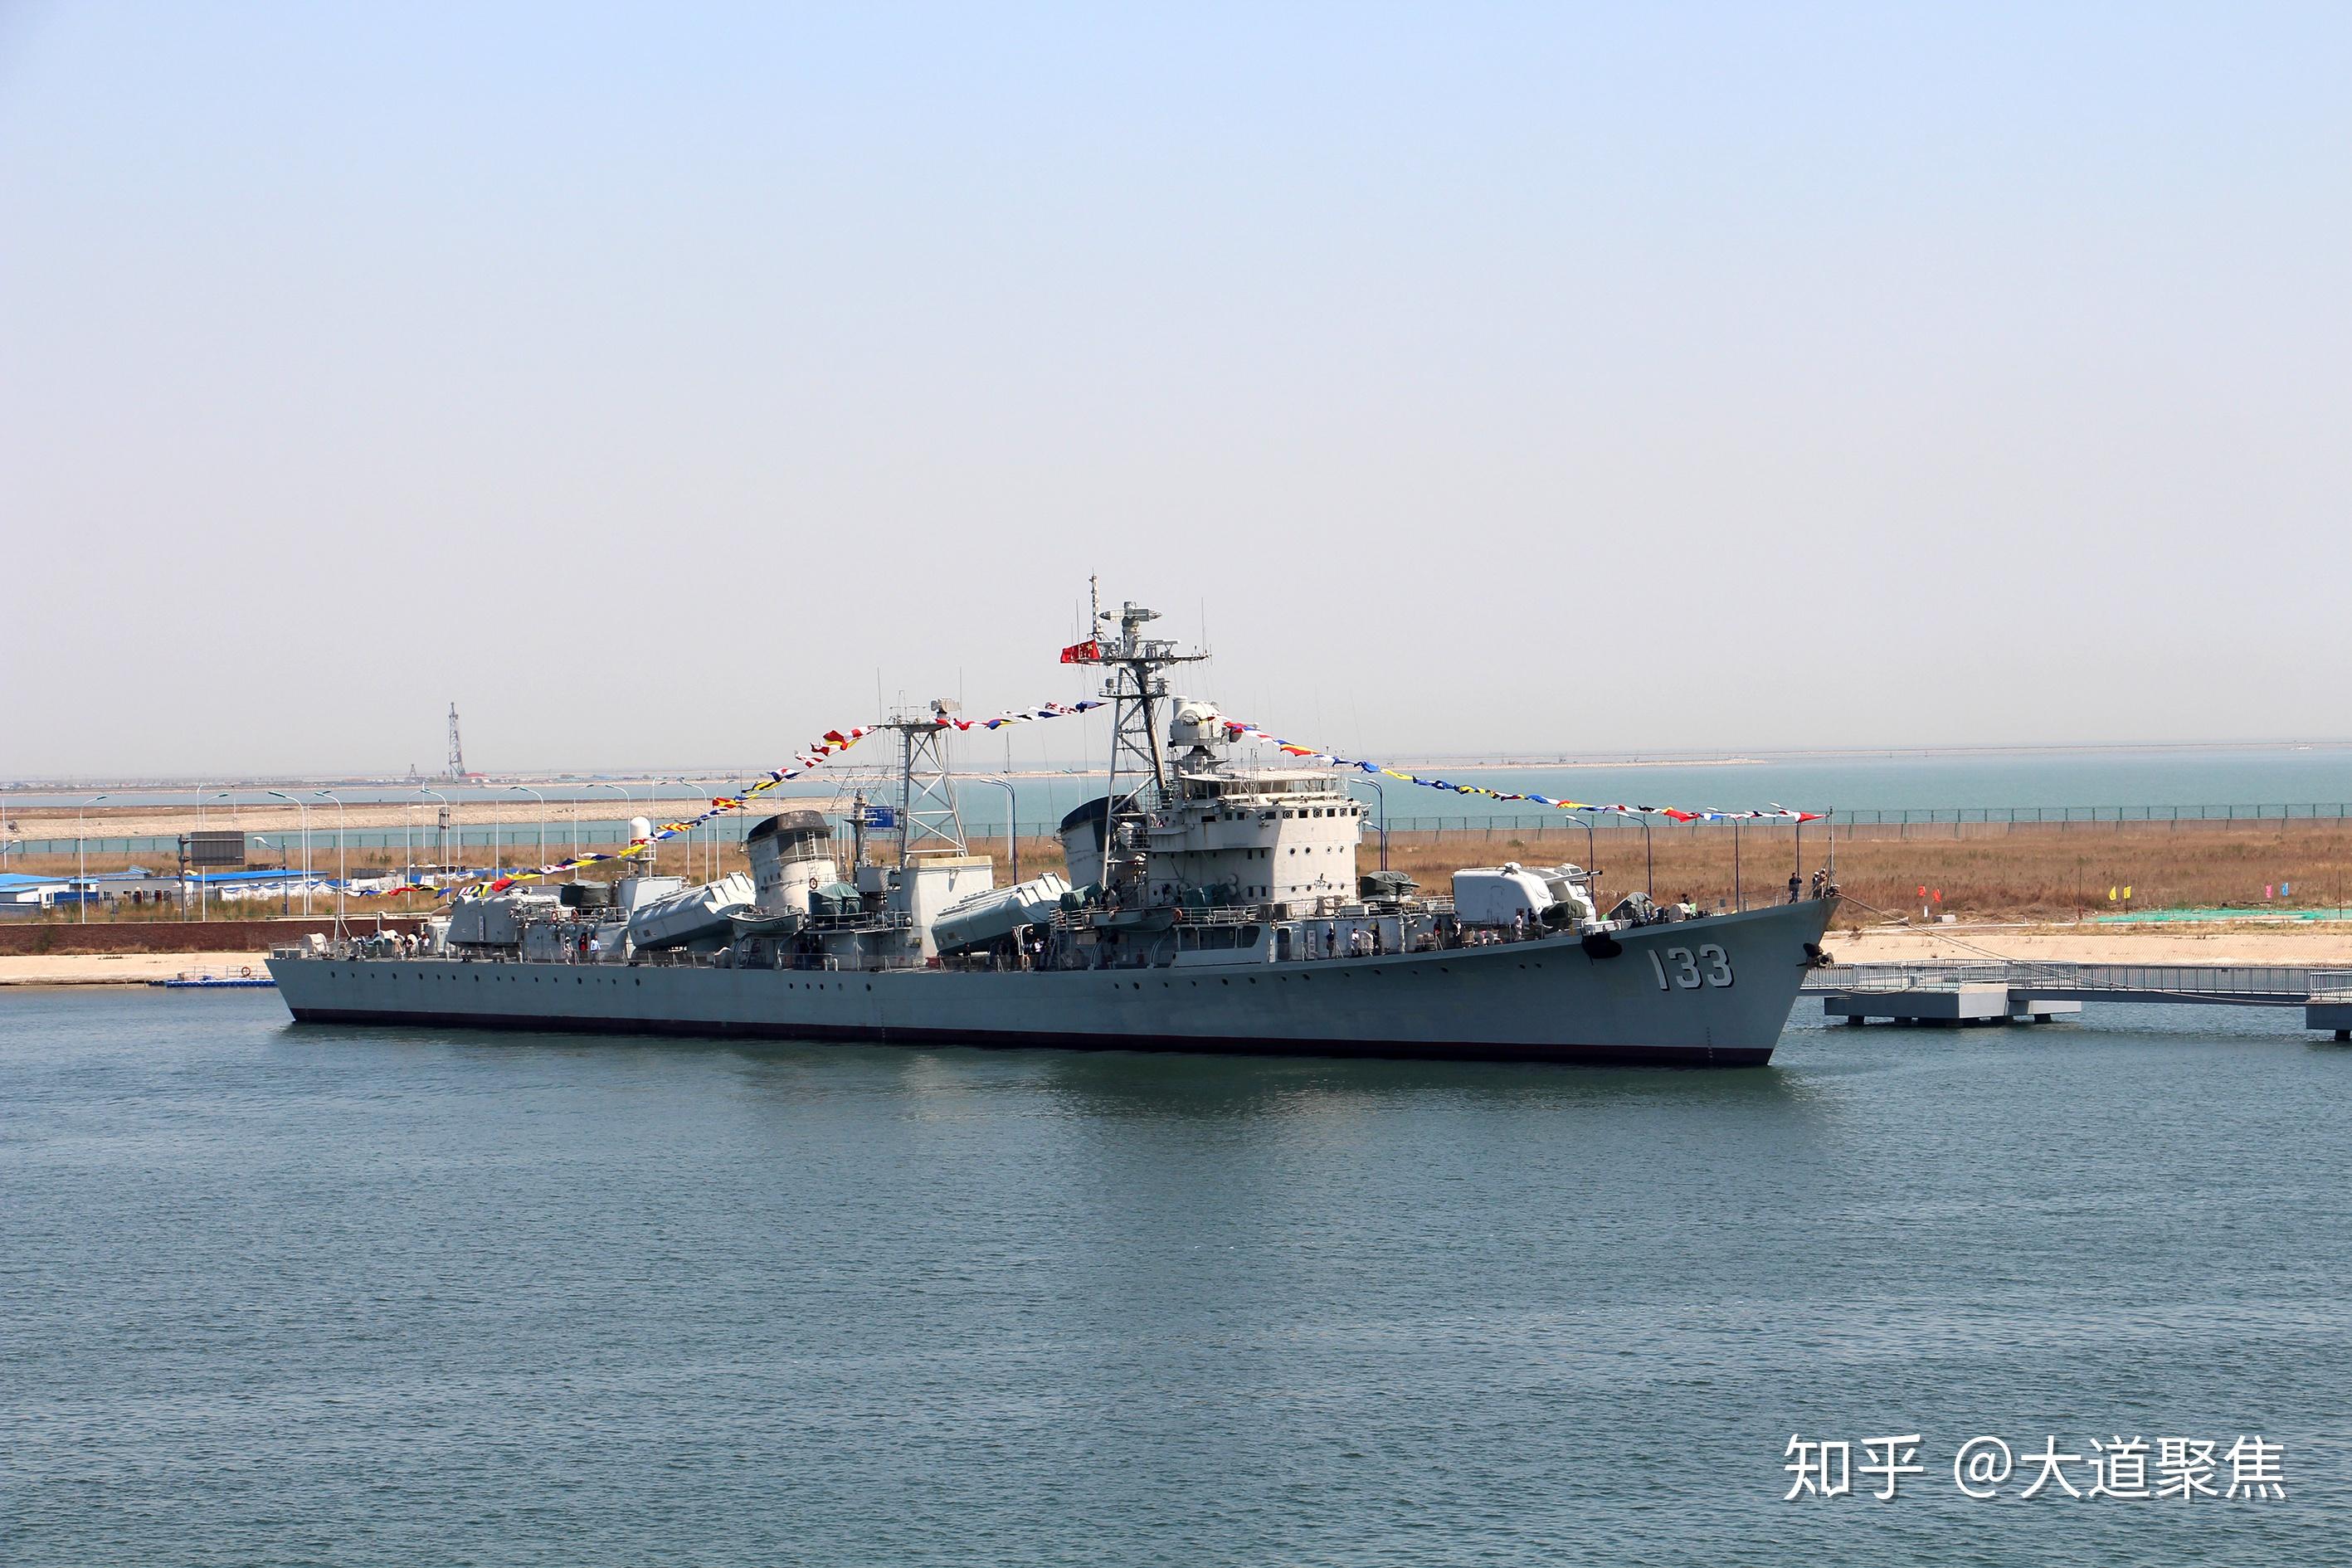 天津航母主题公园:静悄悄的海上巨无霸 